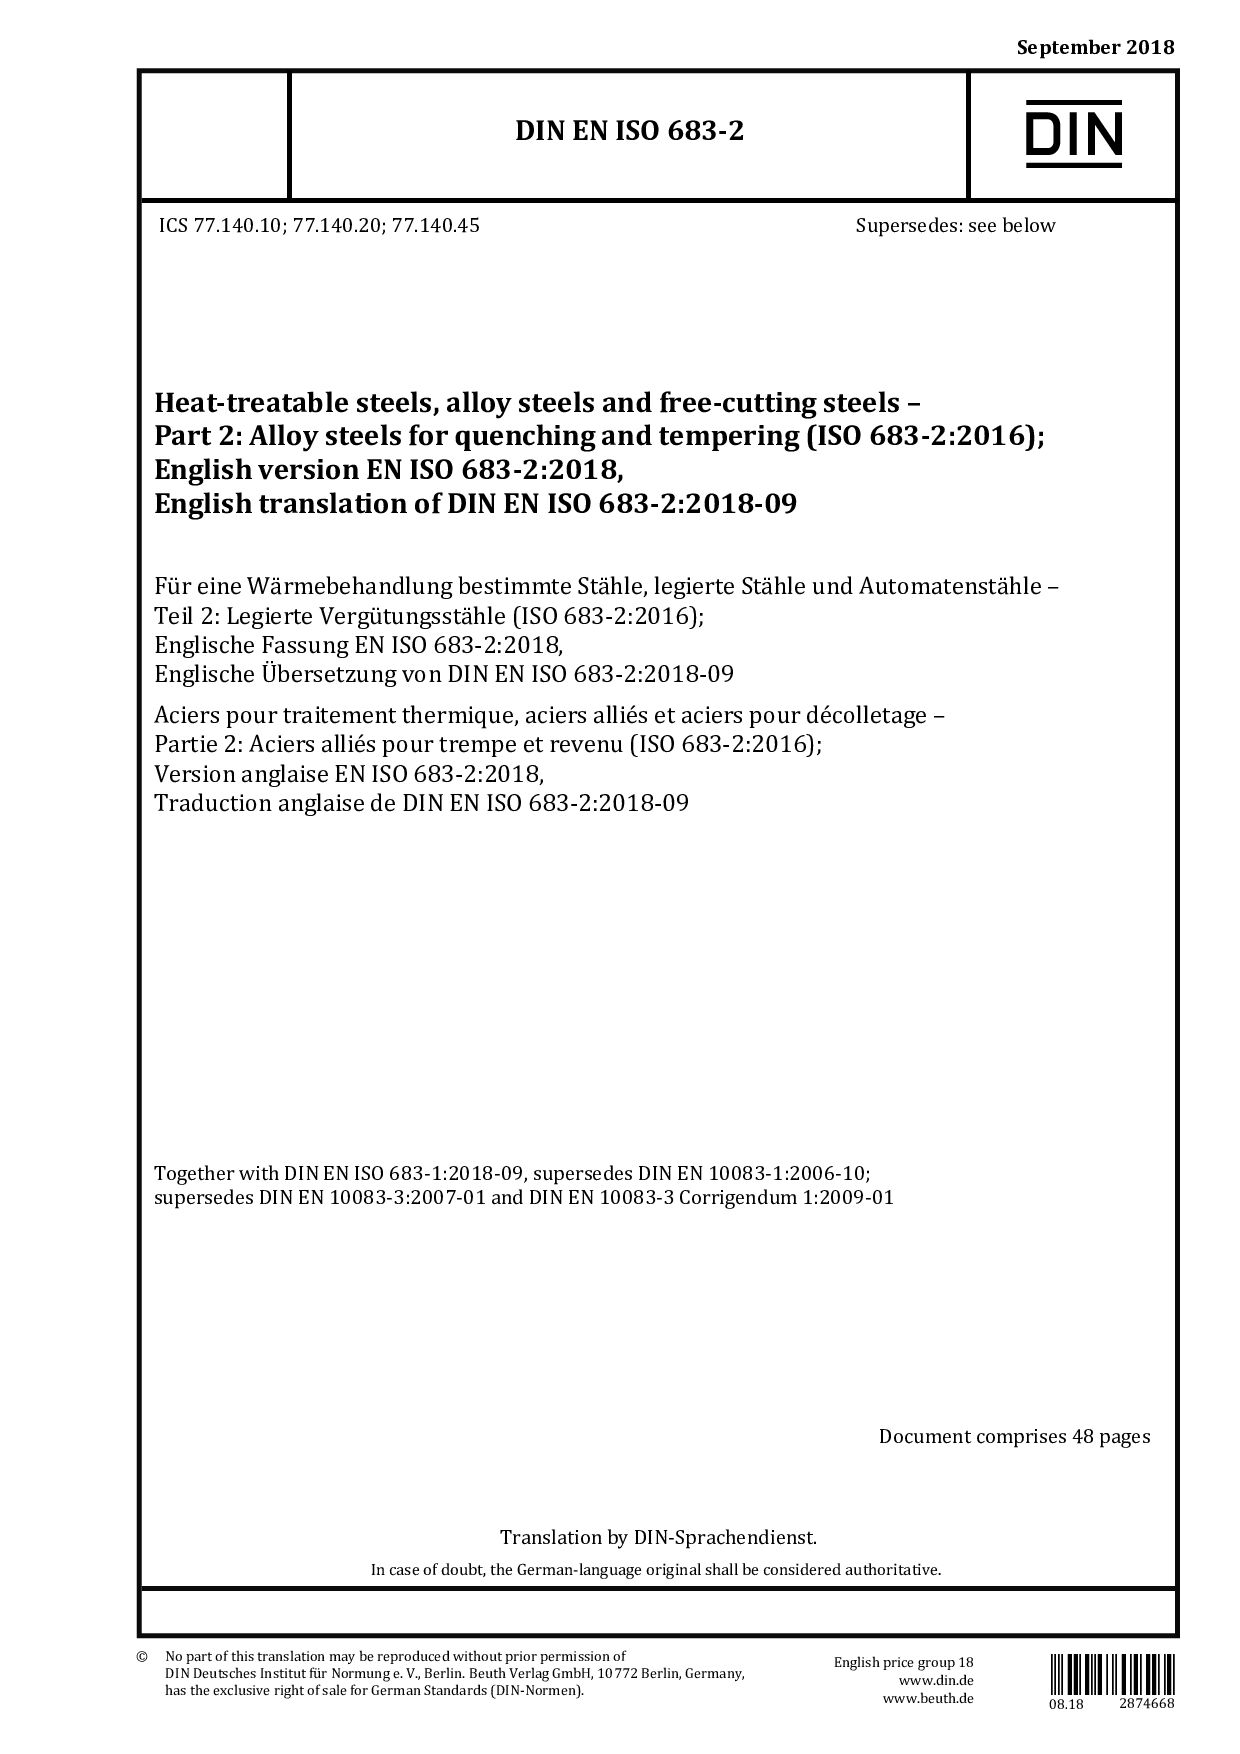 DIN EN ISO 683-2:2018-09封面图